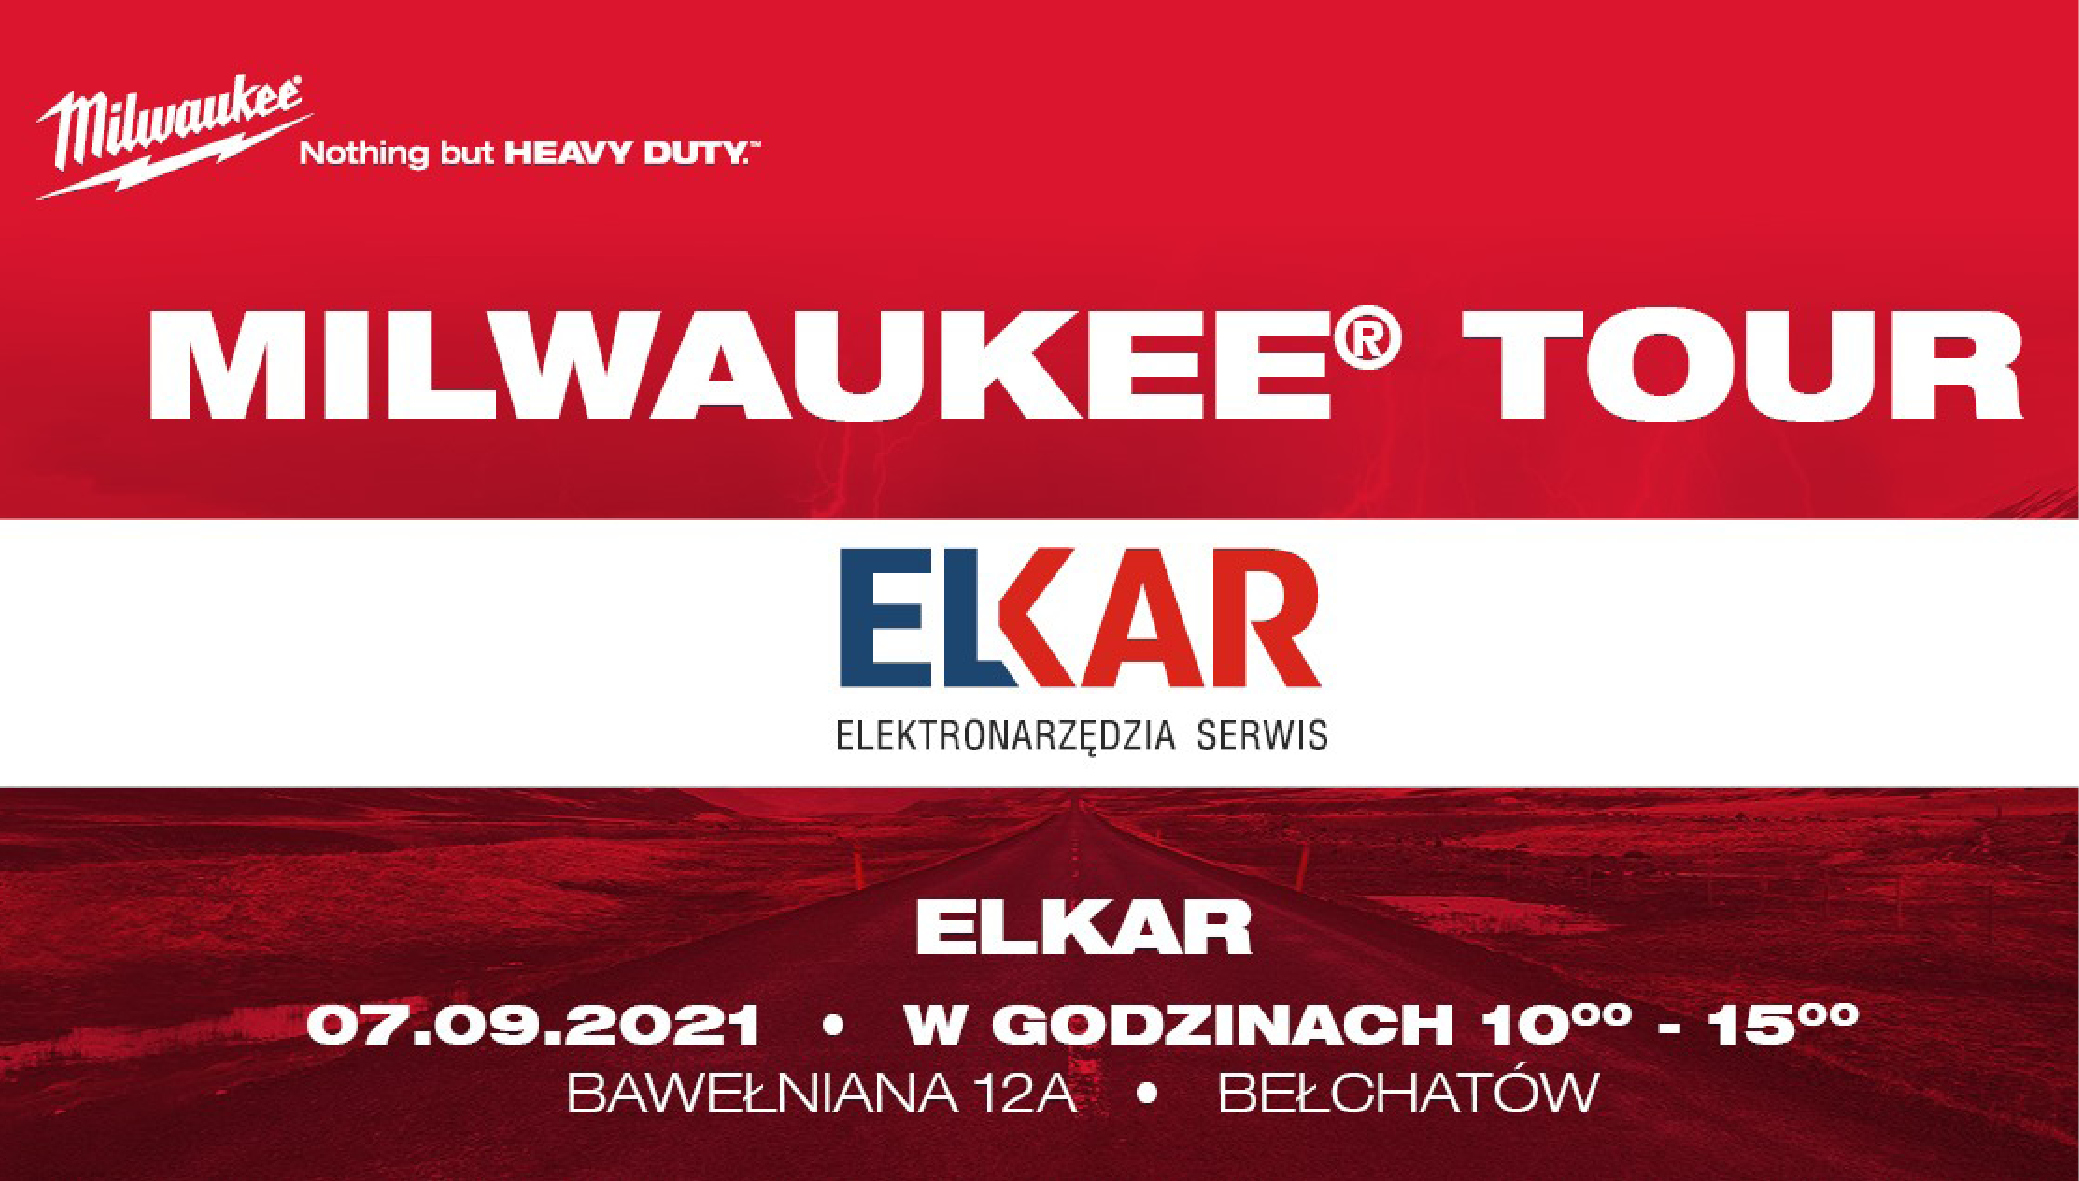 Elkar Bełchatów organizuje DZIEŃ OTWARTY MILWAKUEE. Zapraszamy 7 września! - Zdjęcie główne